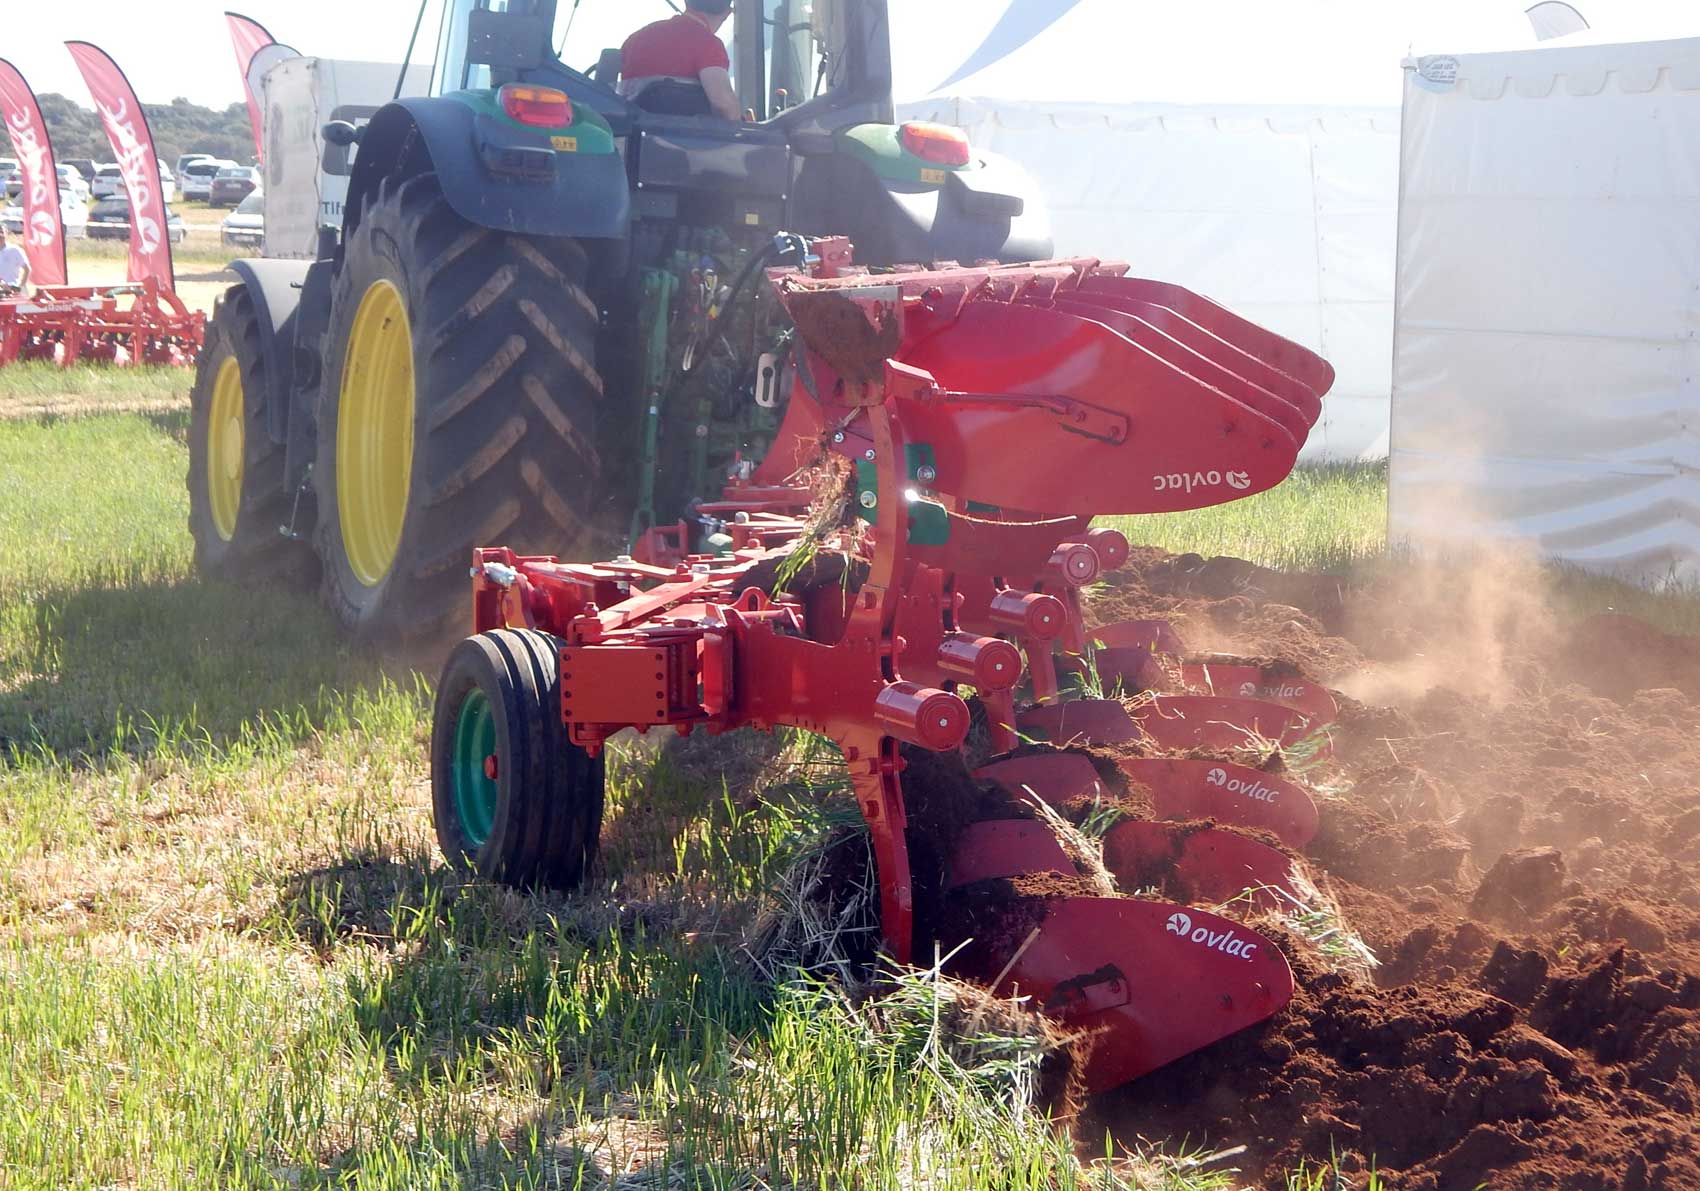 Espectacular trabajo del arado reversible de Ovlac en tierras manchegas durante Demoagro 2017